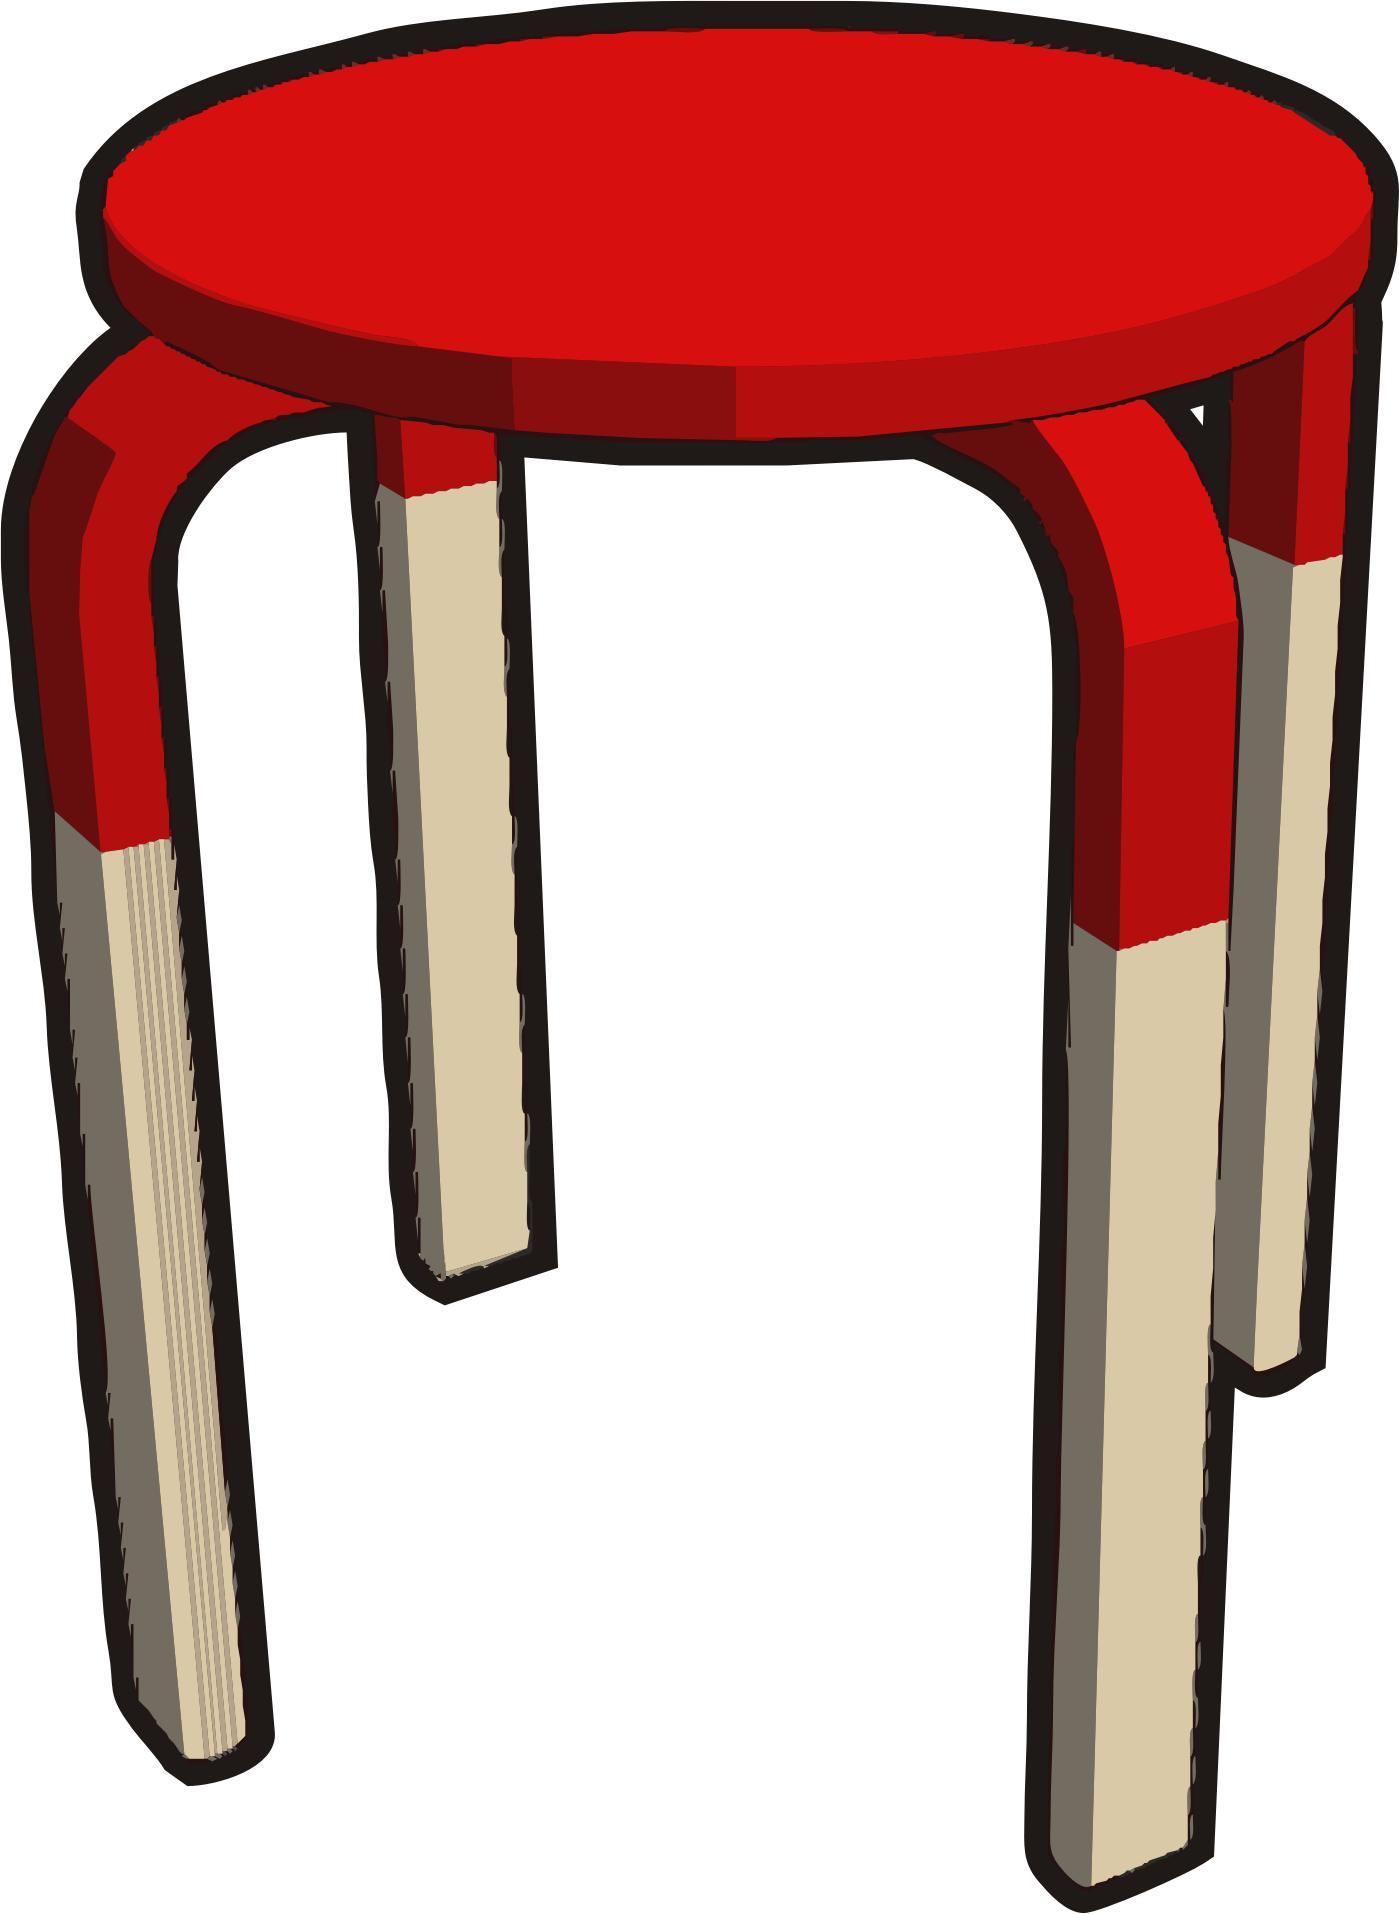 Ikea stuff - Frosta stool, half red png